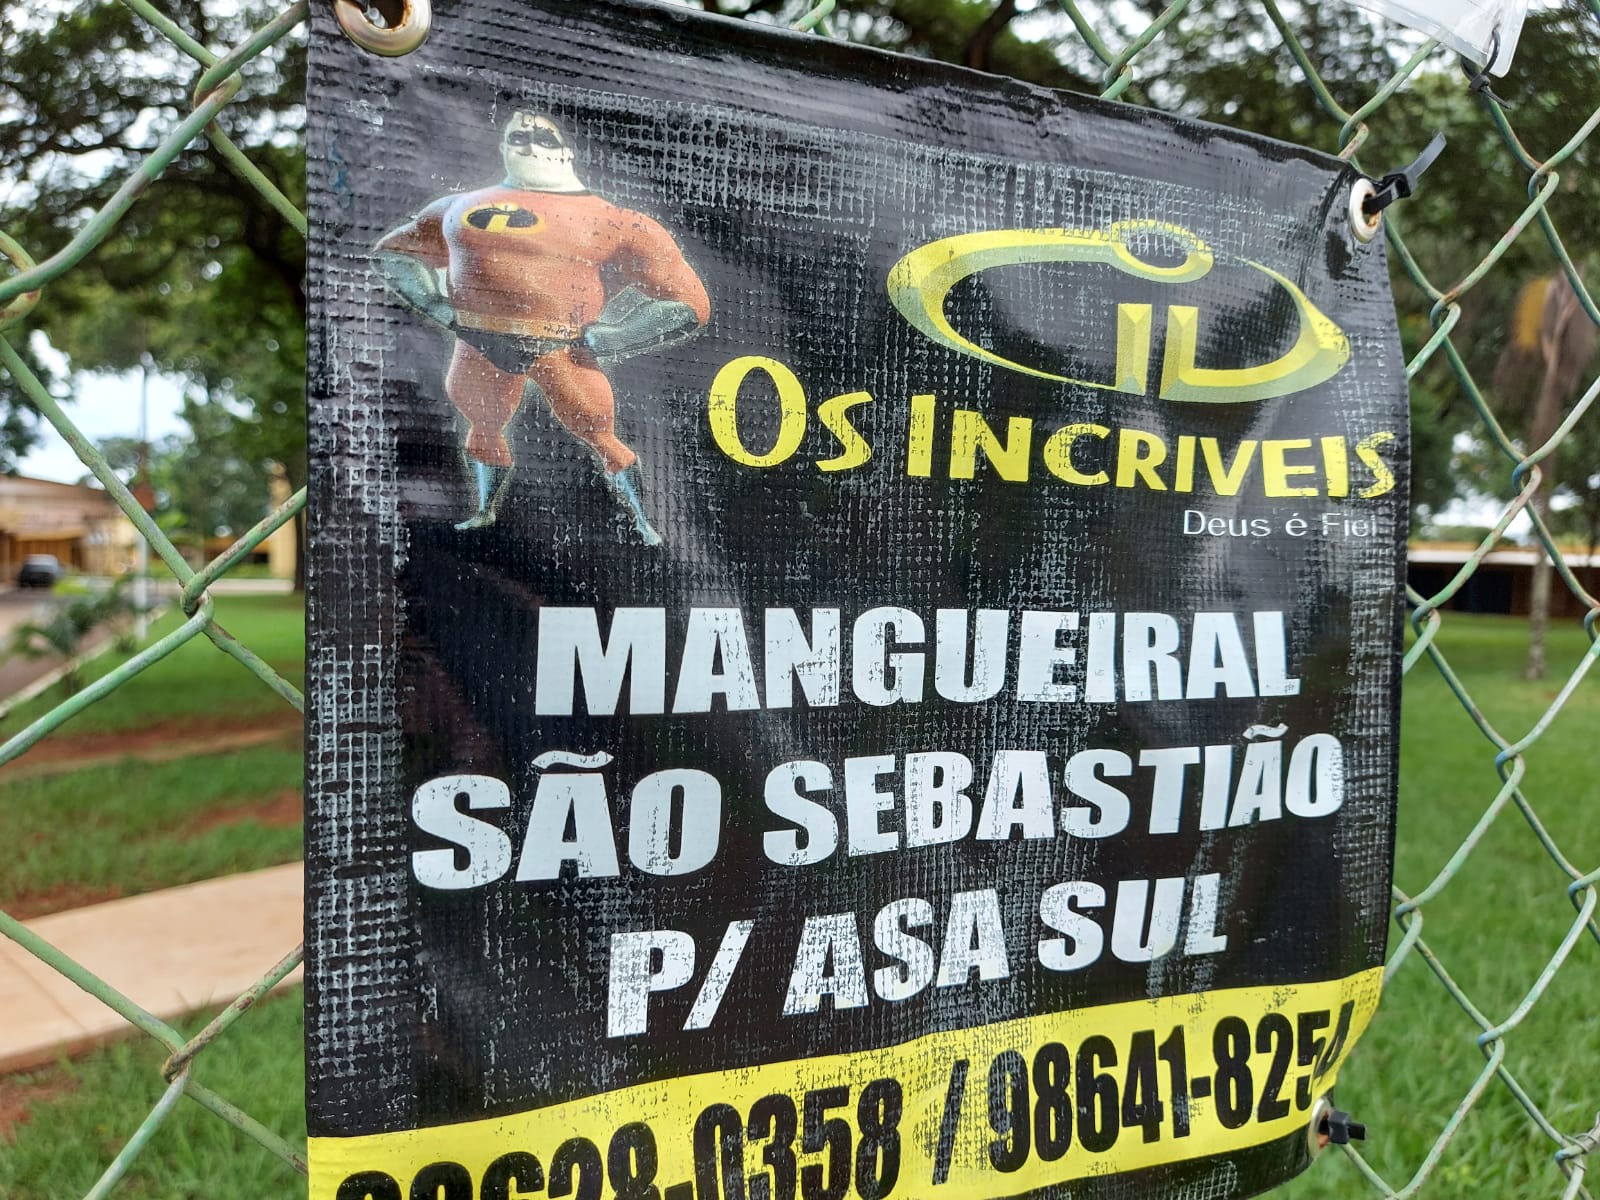 Transporte Escolar Mangueiral, São Sebastião para Asa Sul, Comércio Brasília